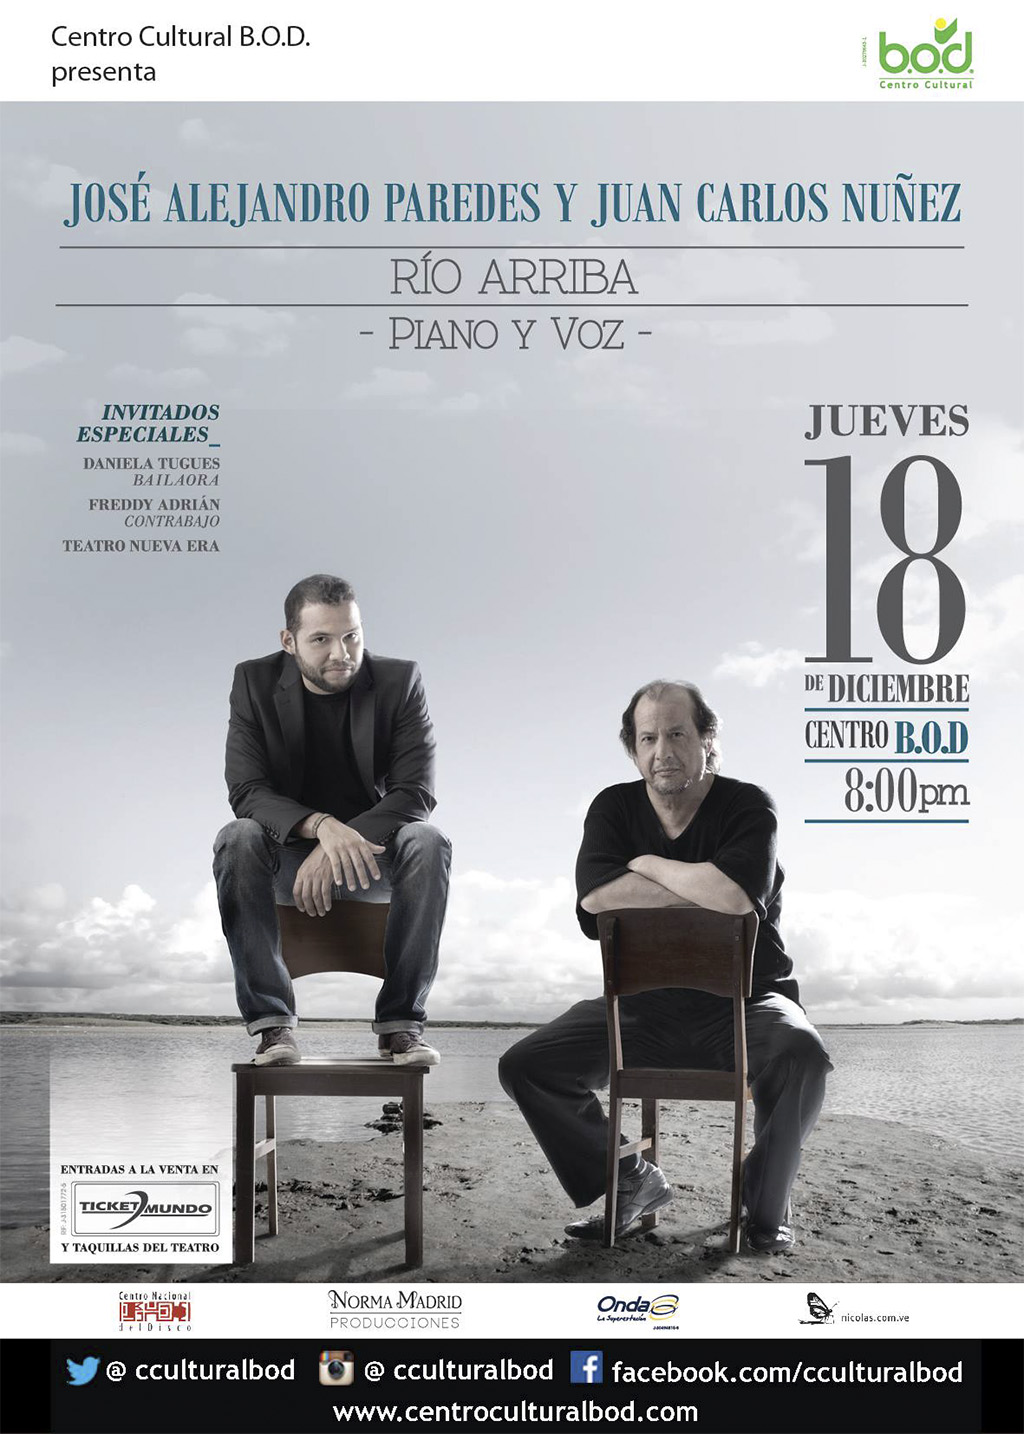 Juan Carlos Núñez en el piano y el cantautor José Alejandro Paredes se lanzan ‘Río Arriba’ para presentarnos una producción discográfica de colección